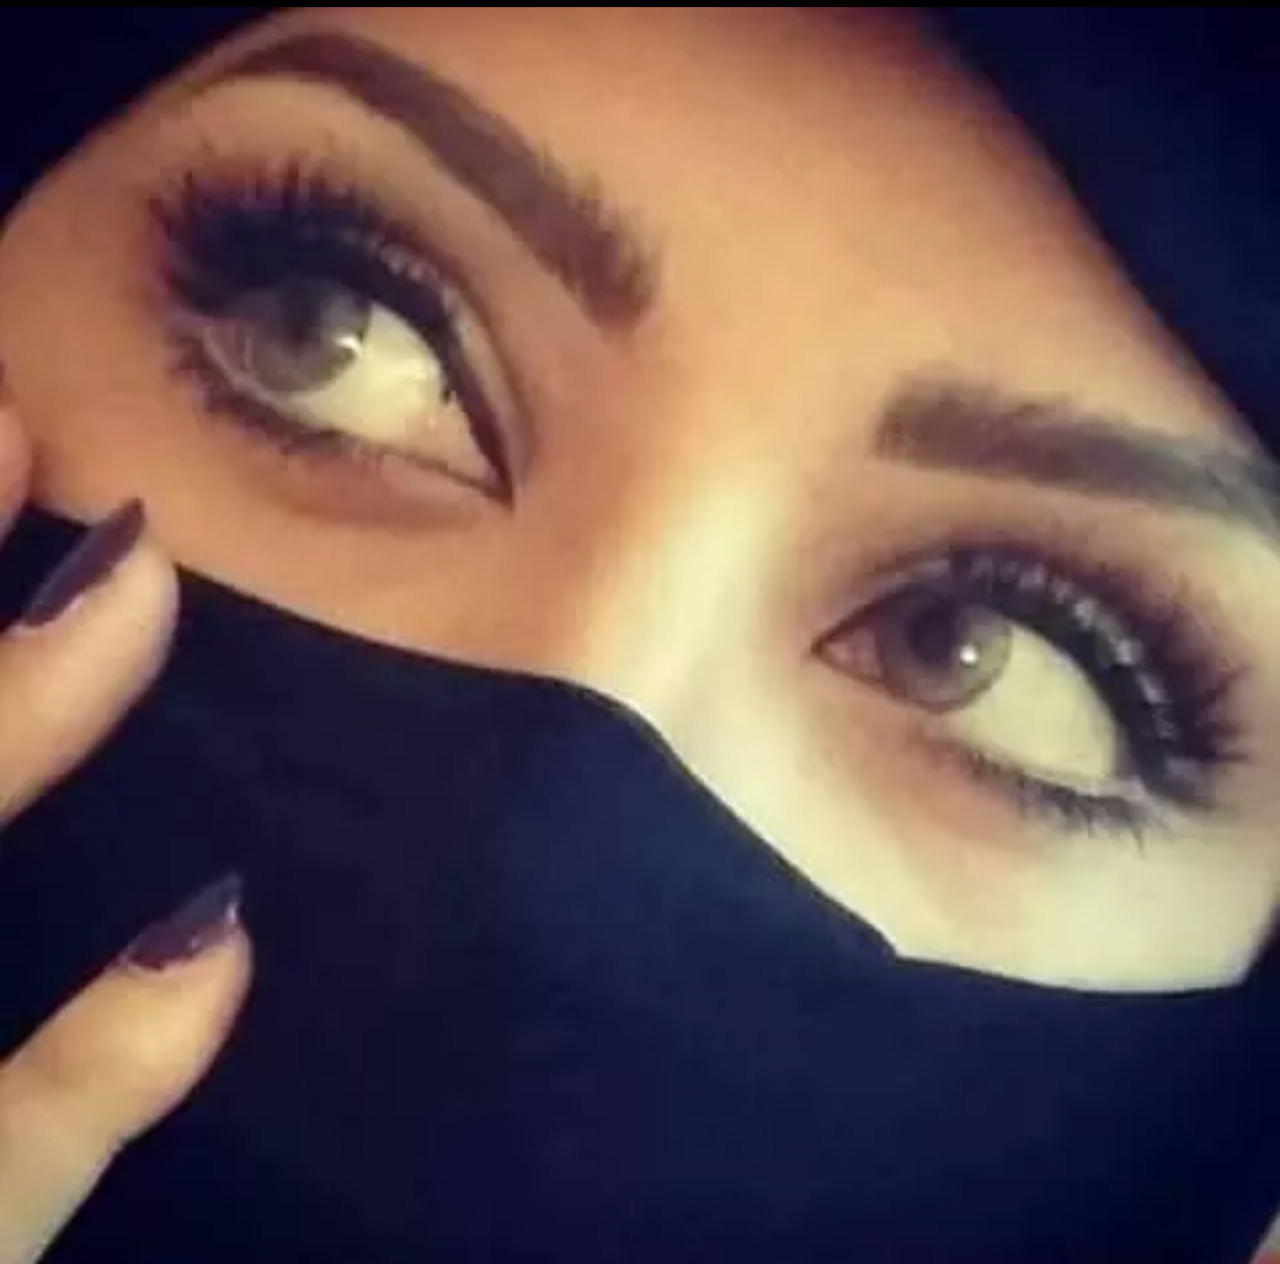 اجمل صور بنات البدو شاهد احلى بنات في العالم كلام حب